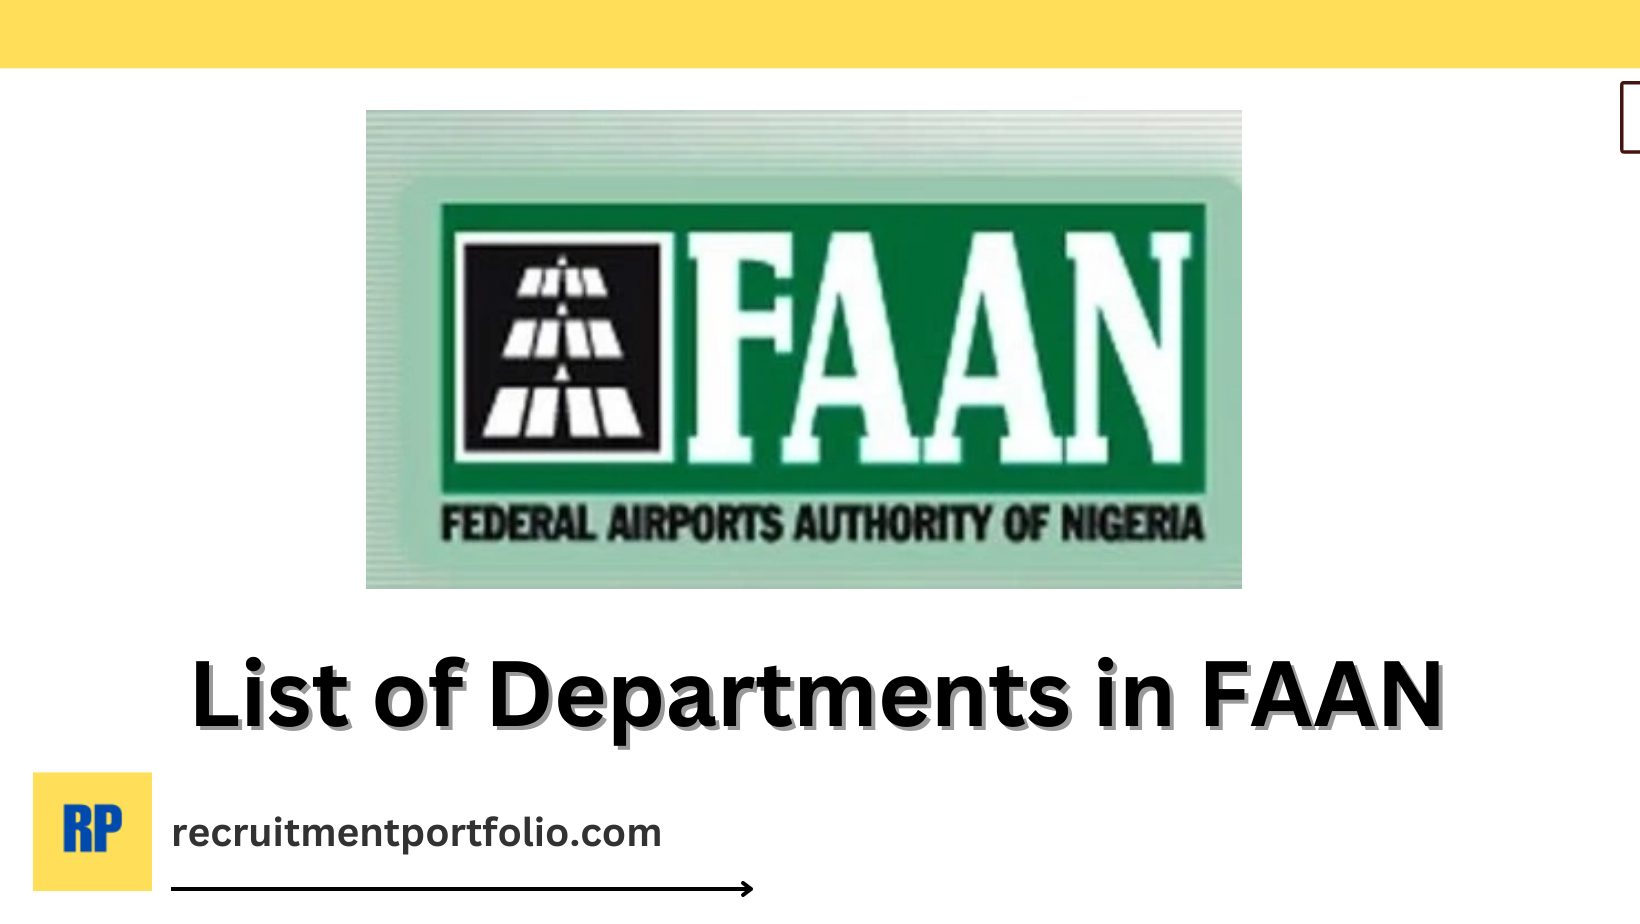 Departments in FAAN